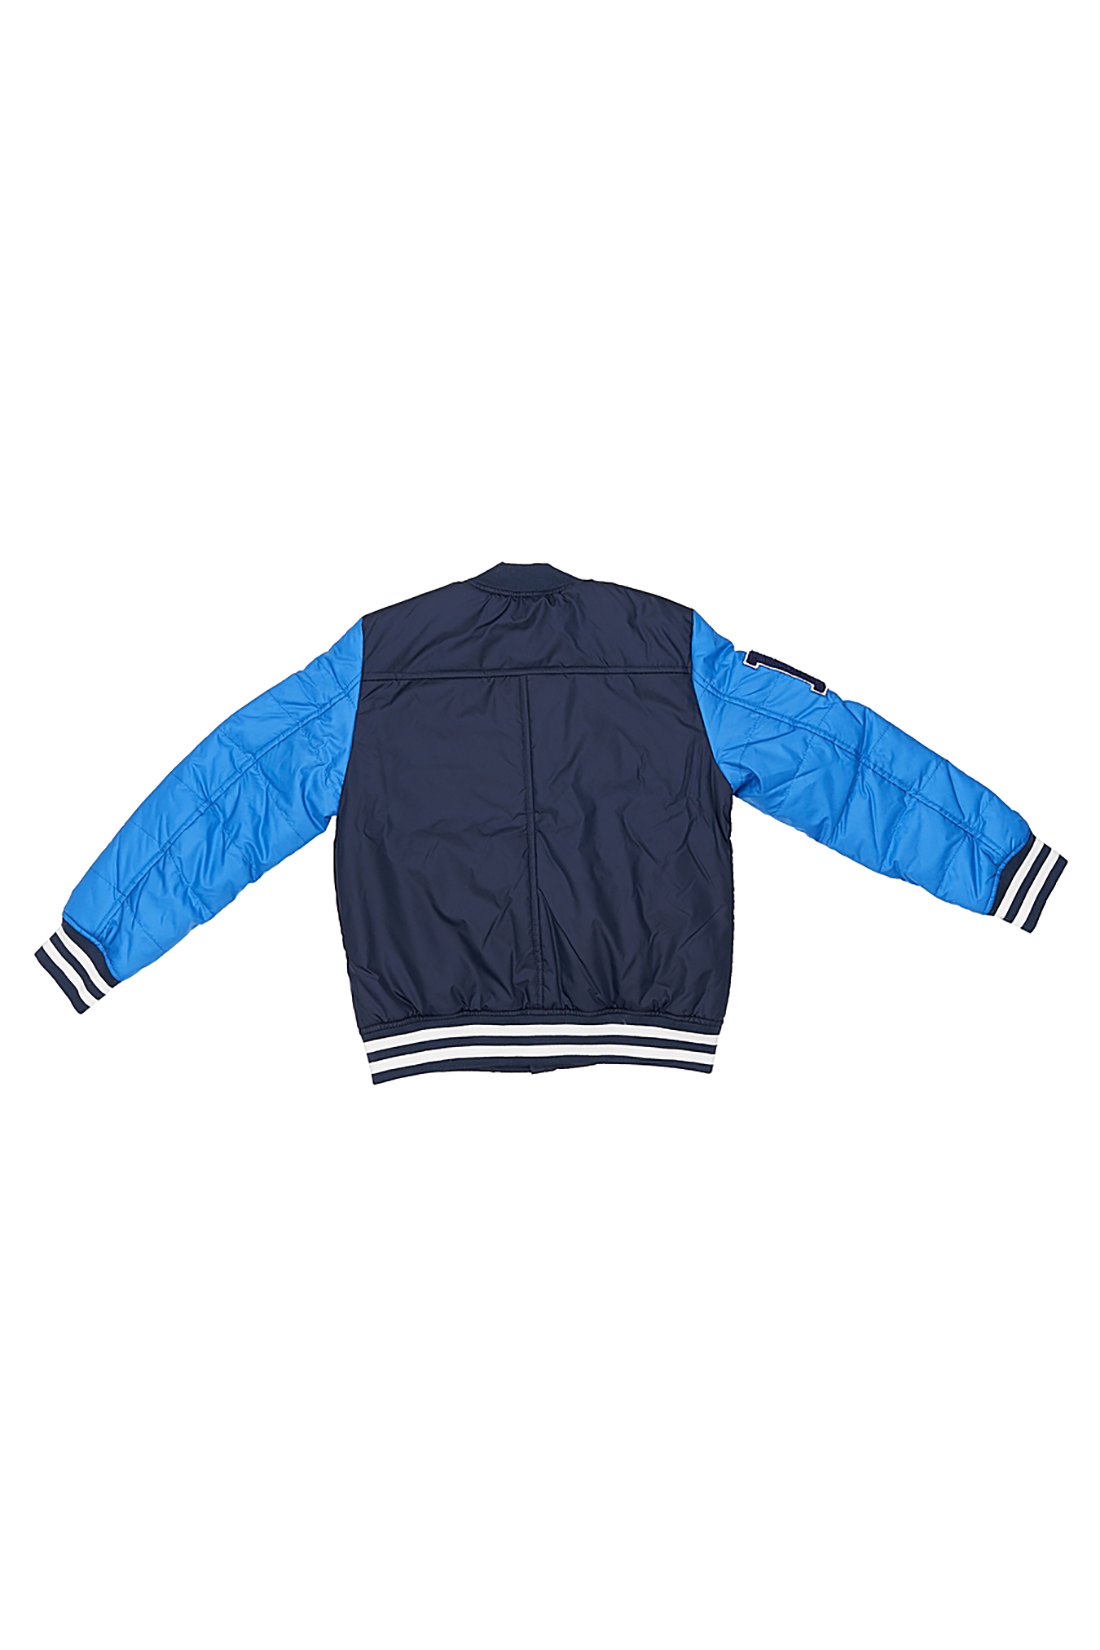 Куртка для мальчика (арт. baon BJ538003), размер 146-152, цвет синий Куртка для мальчика (арт. baon BJ538003) - фото 3